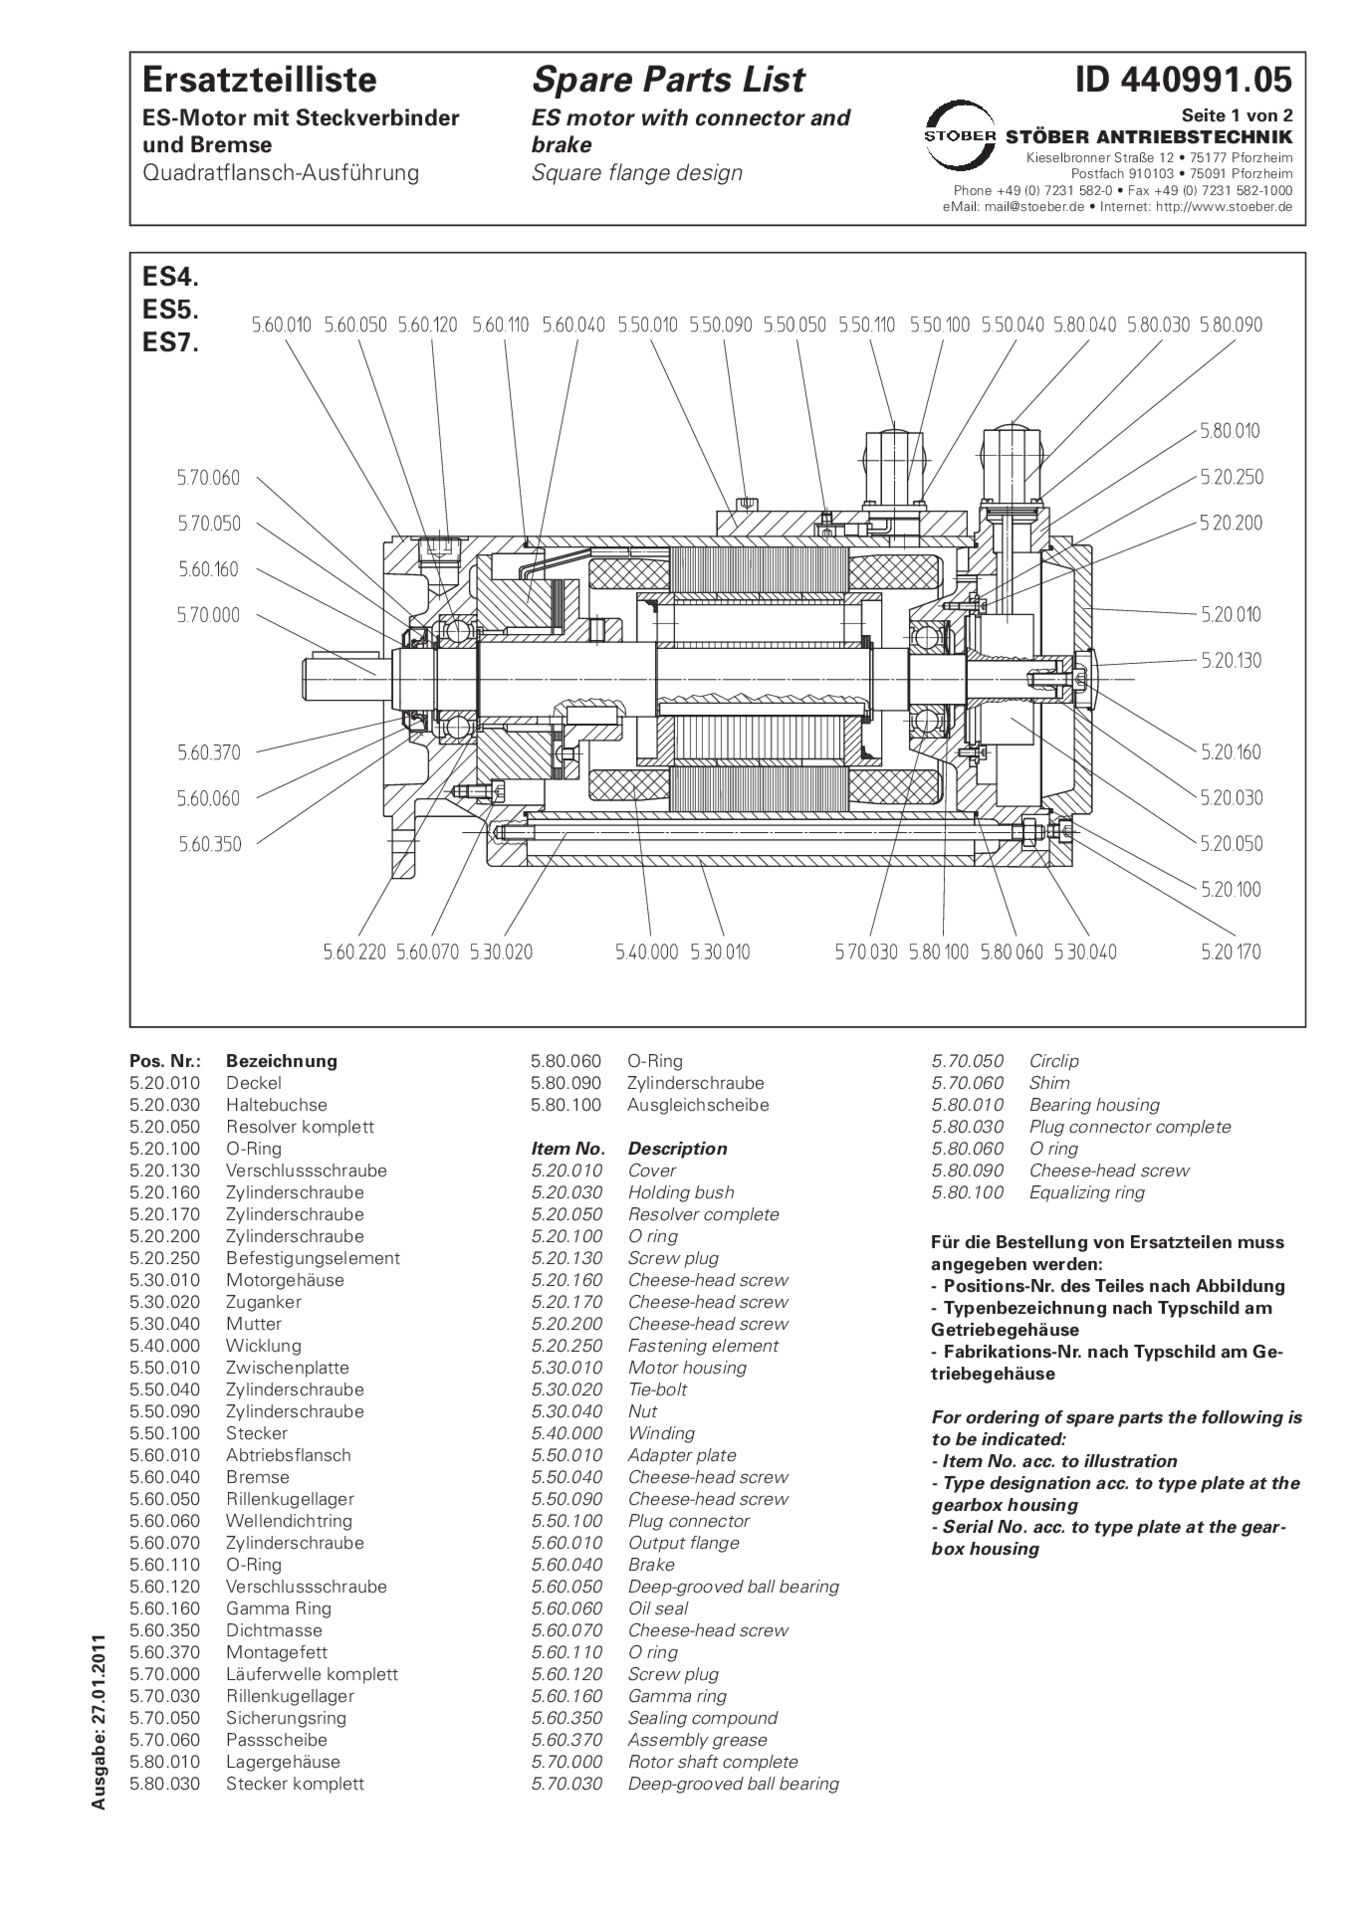 Spare parts list ES4_ES5_ES7 with connector brake flange design